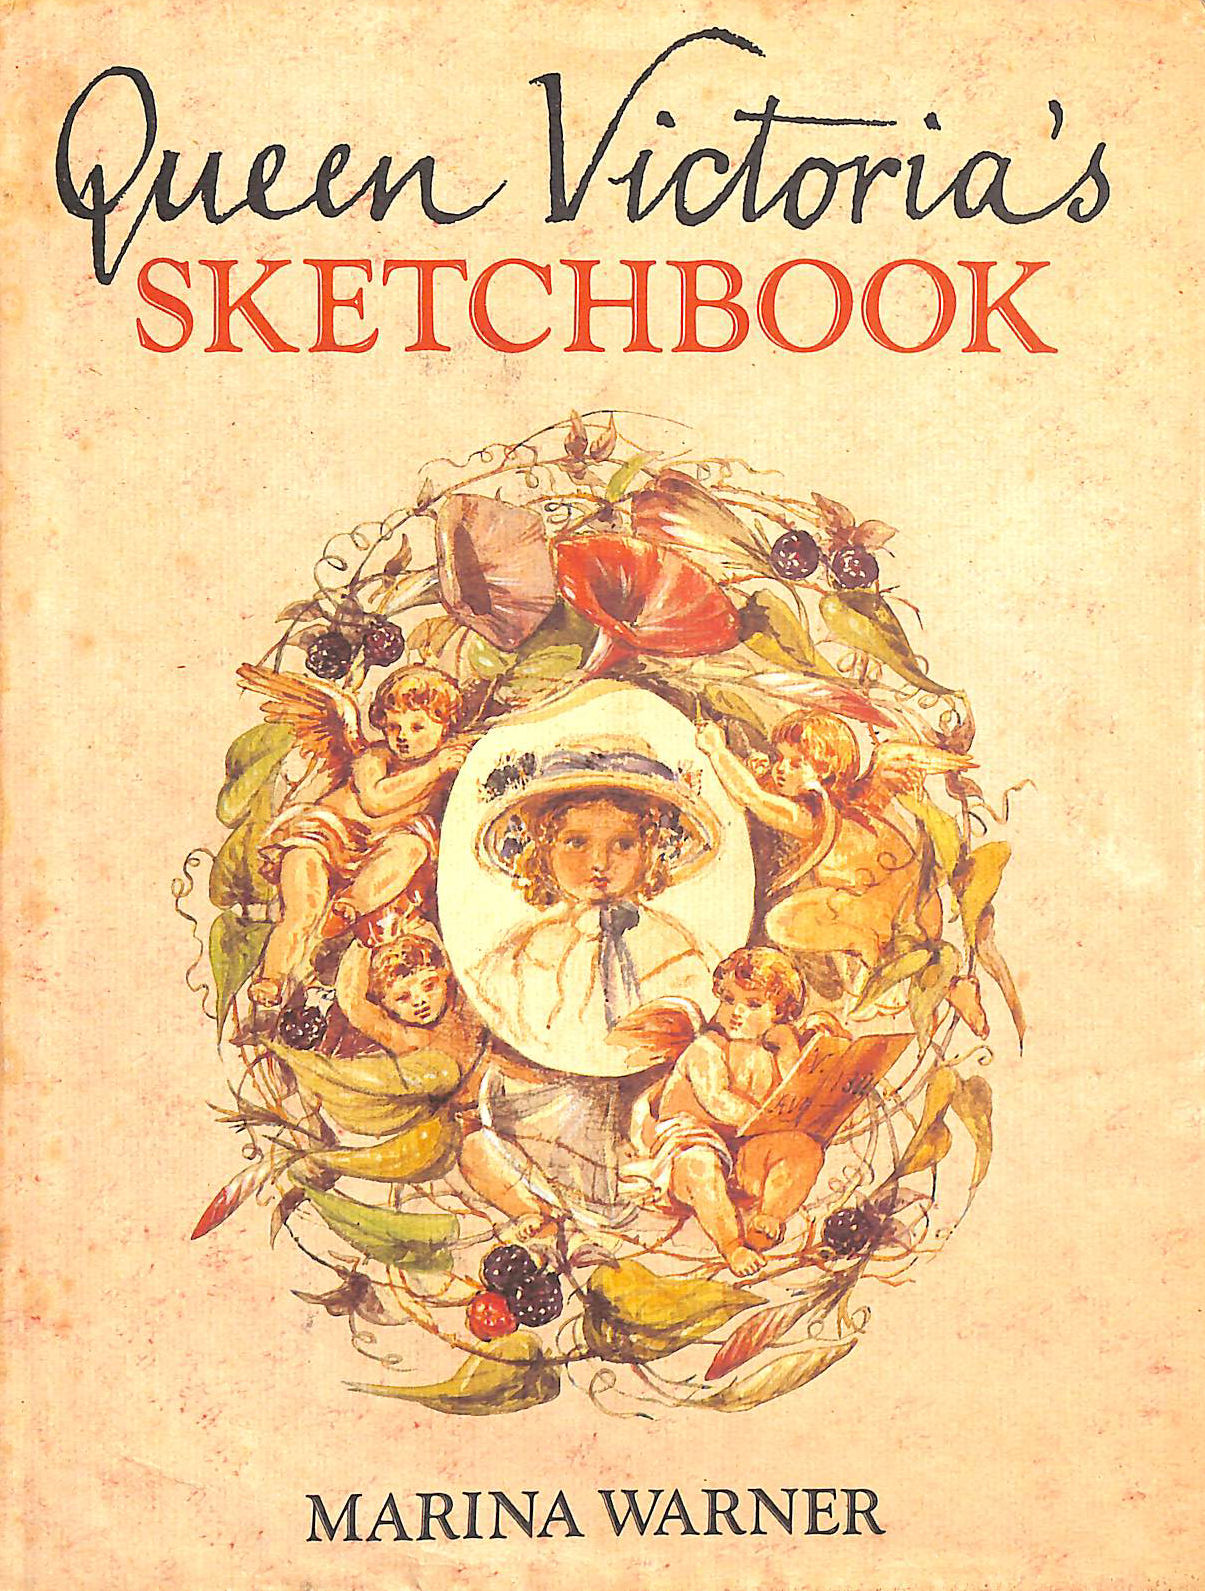 MARINA WARNER - Queen Victoria's Sketchbook